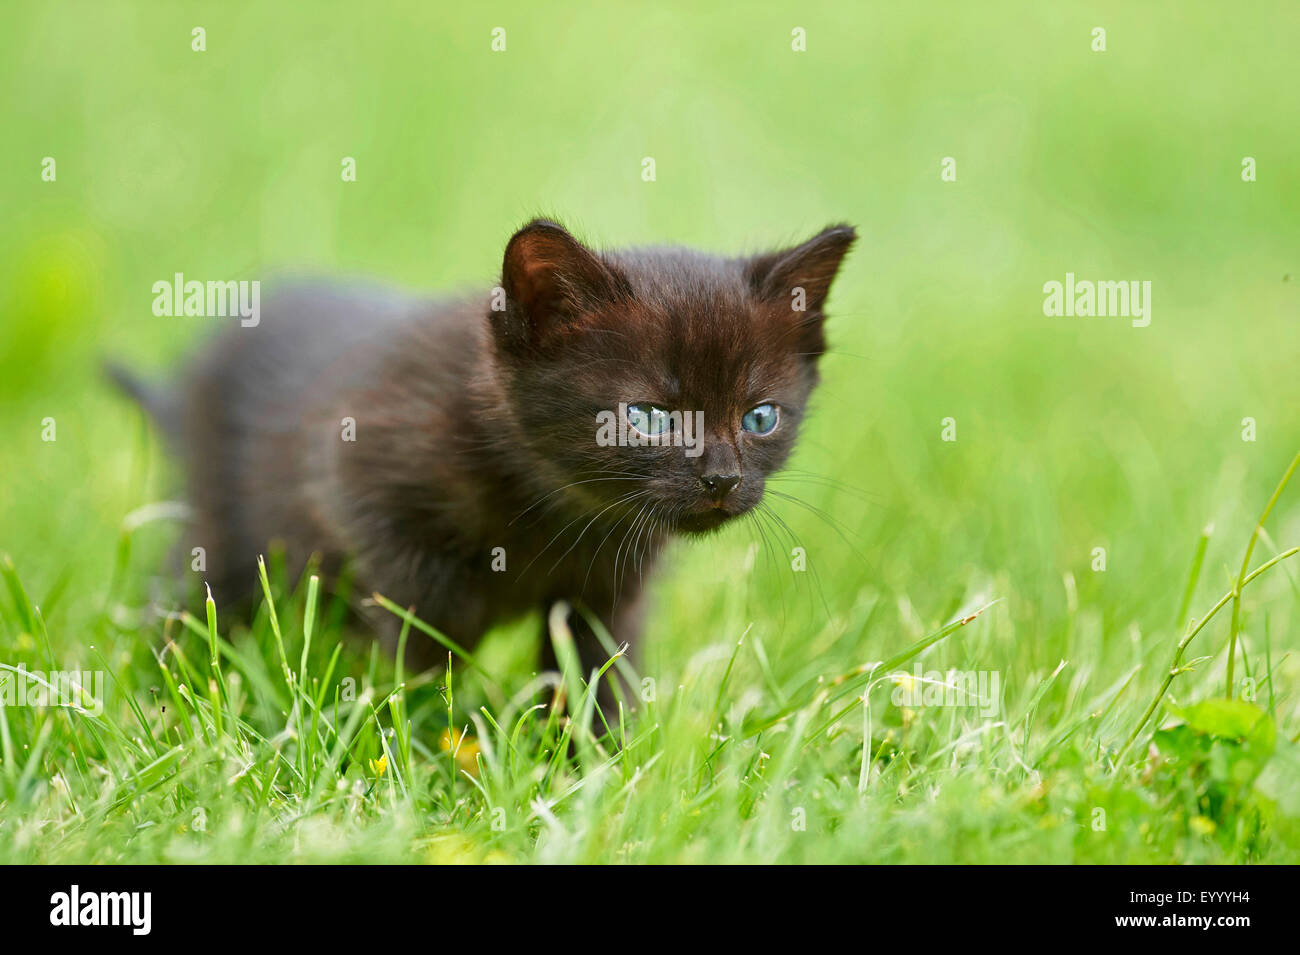 Gato doméstico, los gatos domésticos (Felis silvestris catus) f., seis semanas viejo negro gatito de pie en una pradera, Alemania Foto de stock